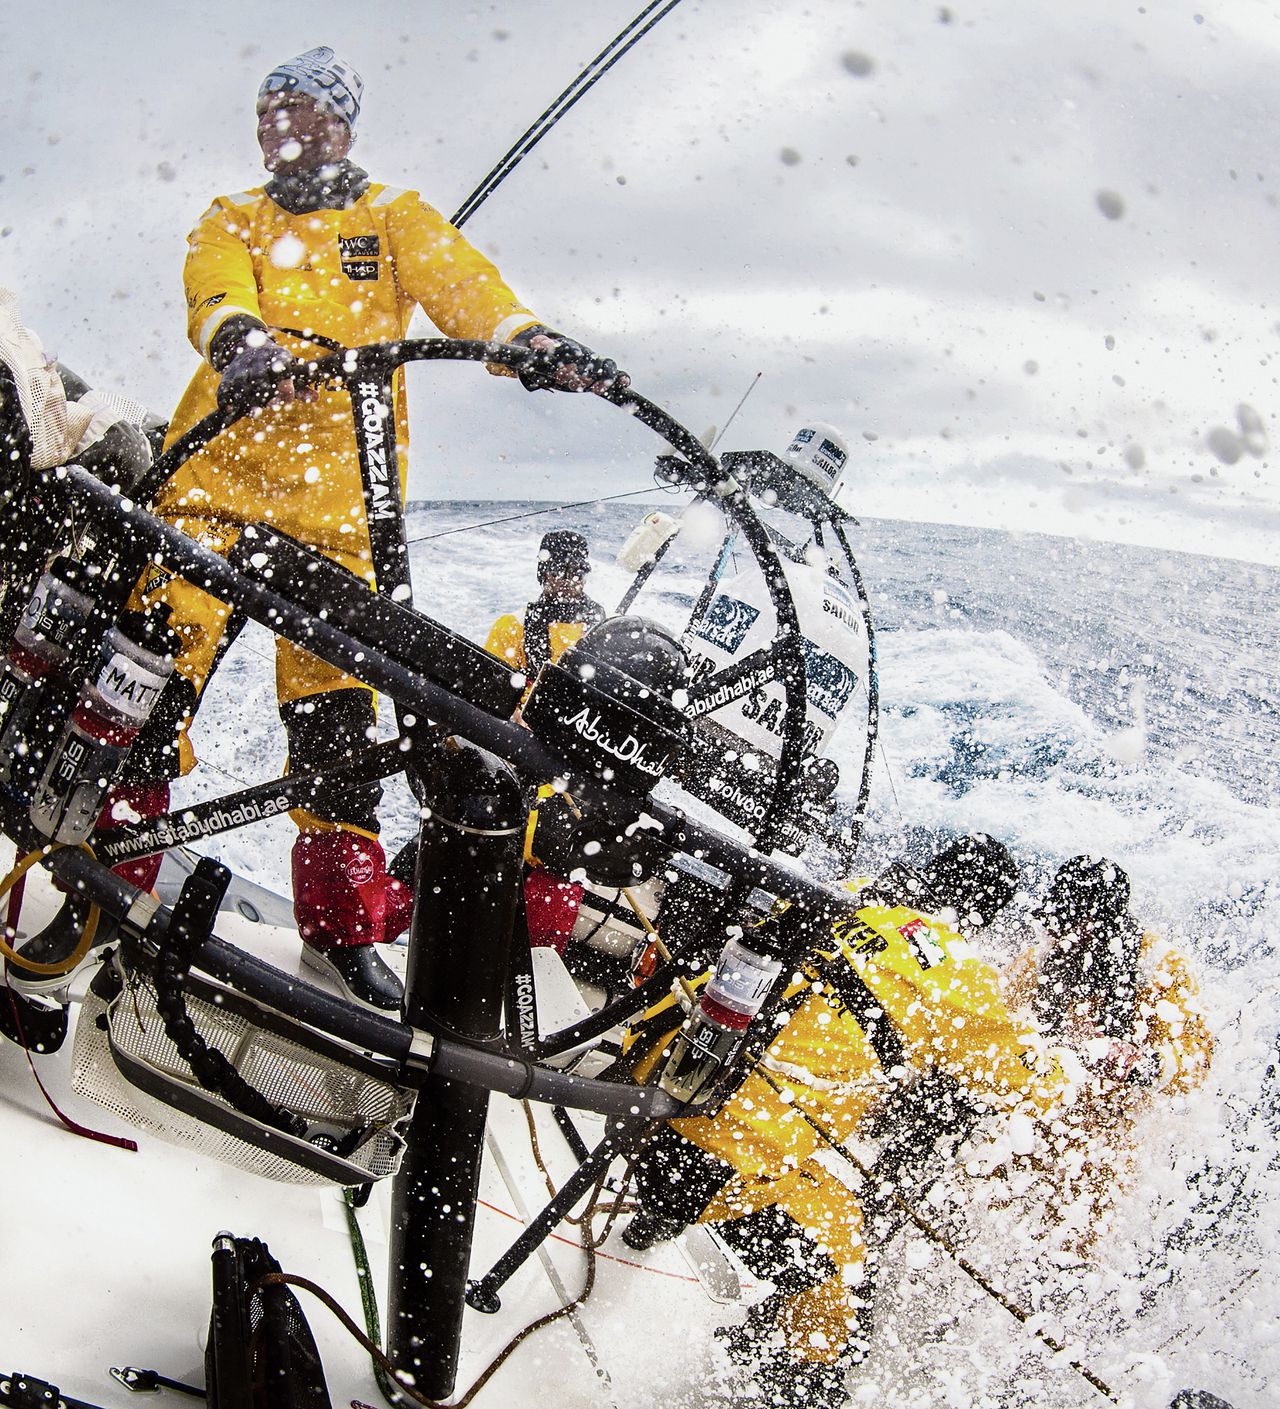 Aan boord van Abu Dhabi in de Zuidelijke Oceaan, in maart 2015 foto Matt Knighton/Abu Dhabi Ocean Racing